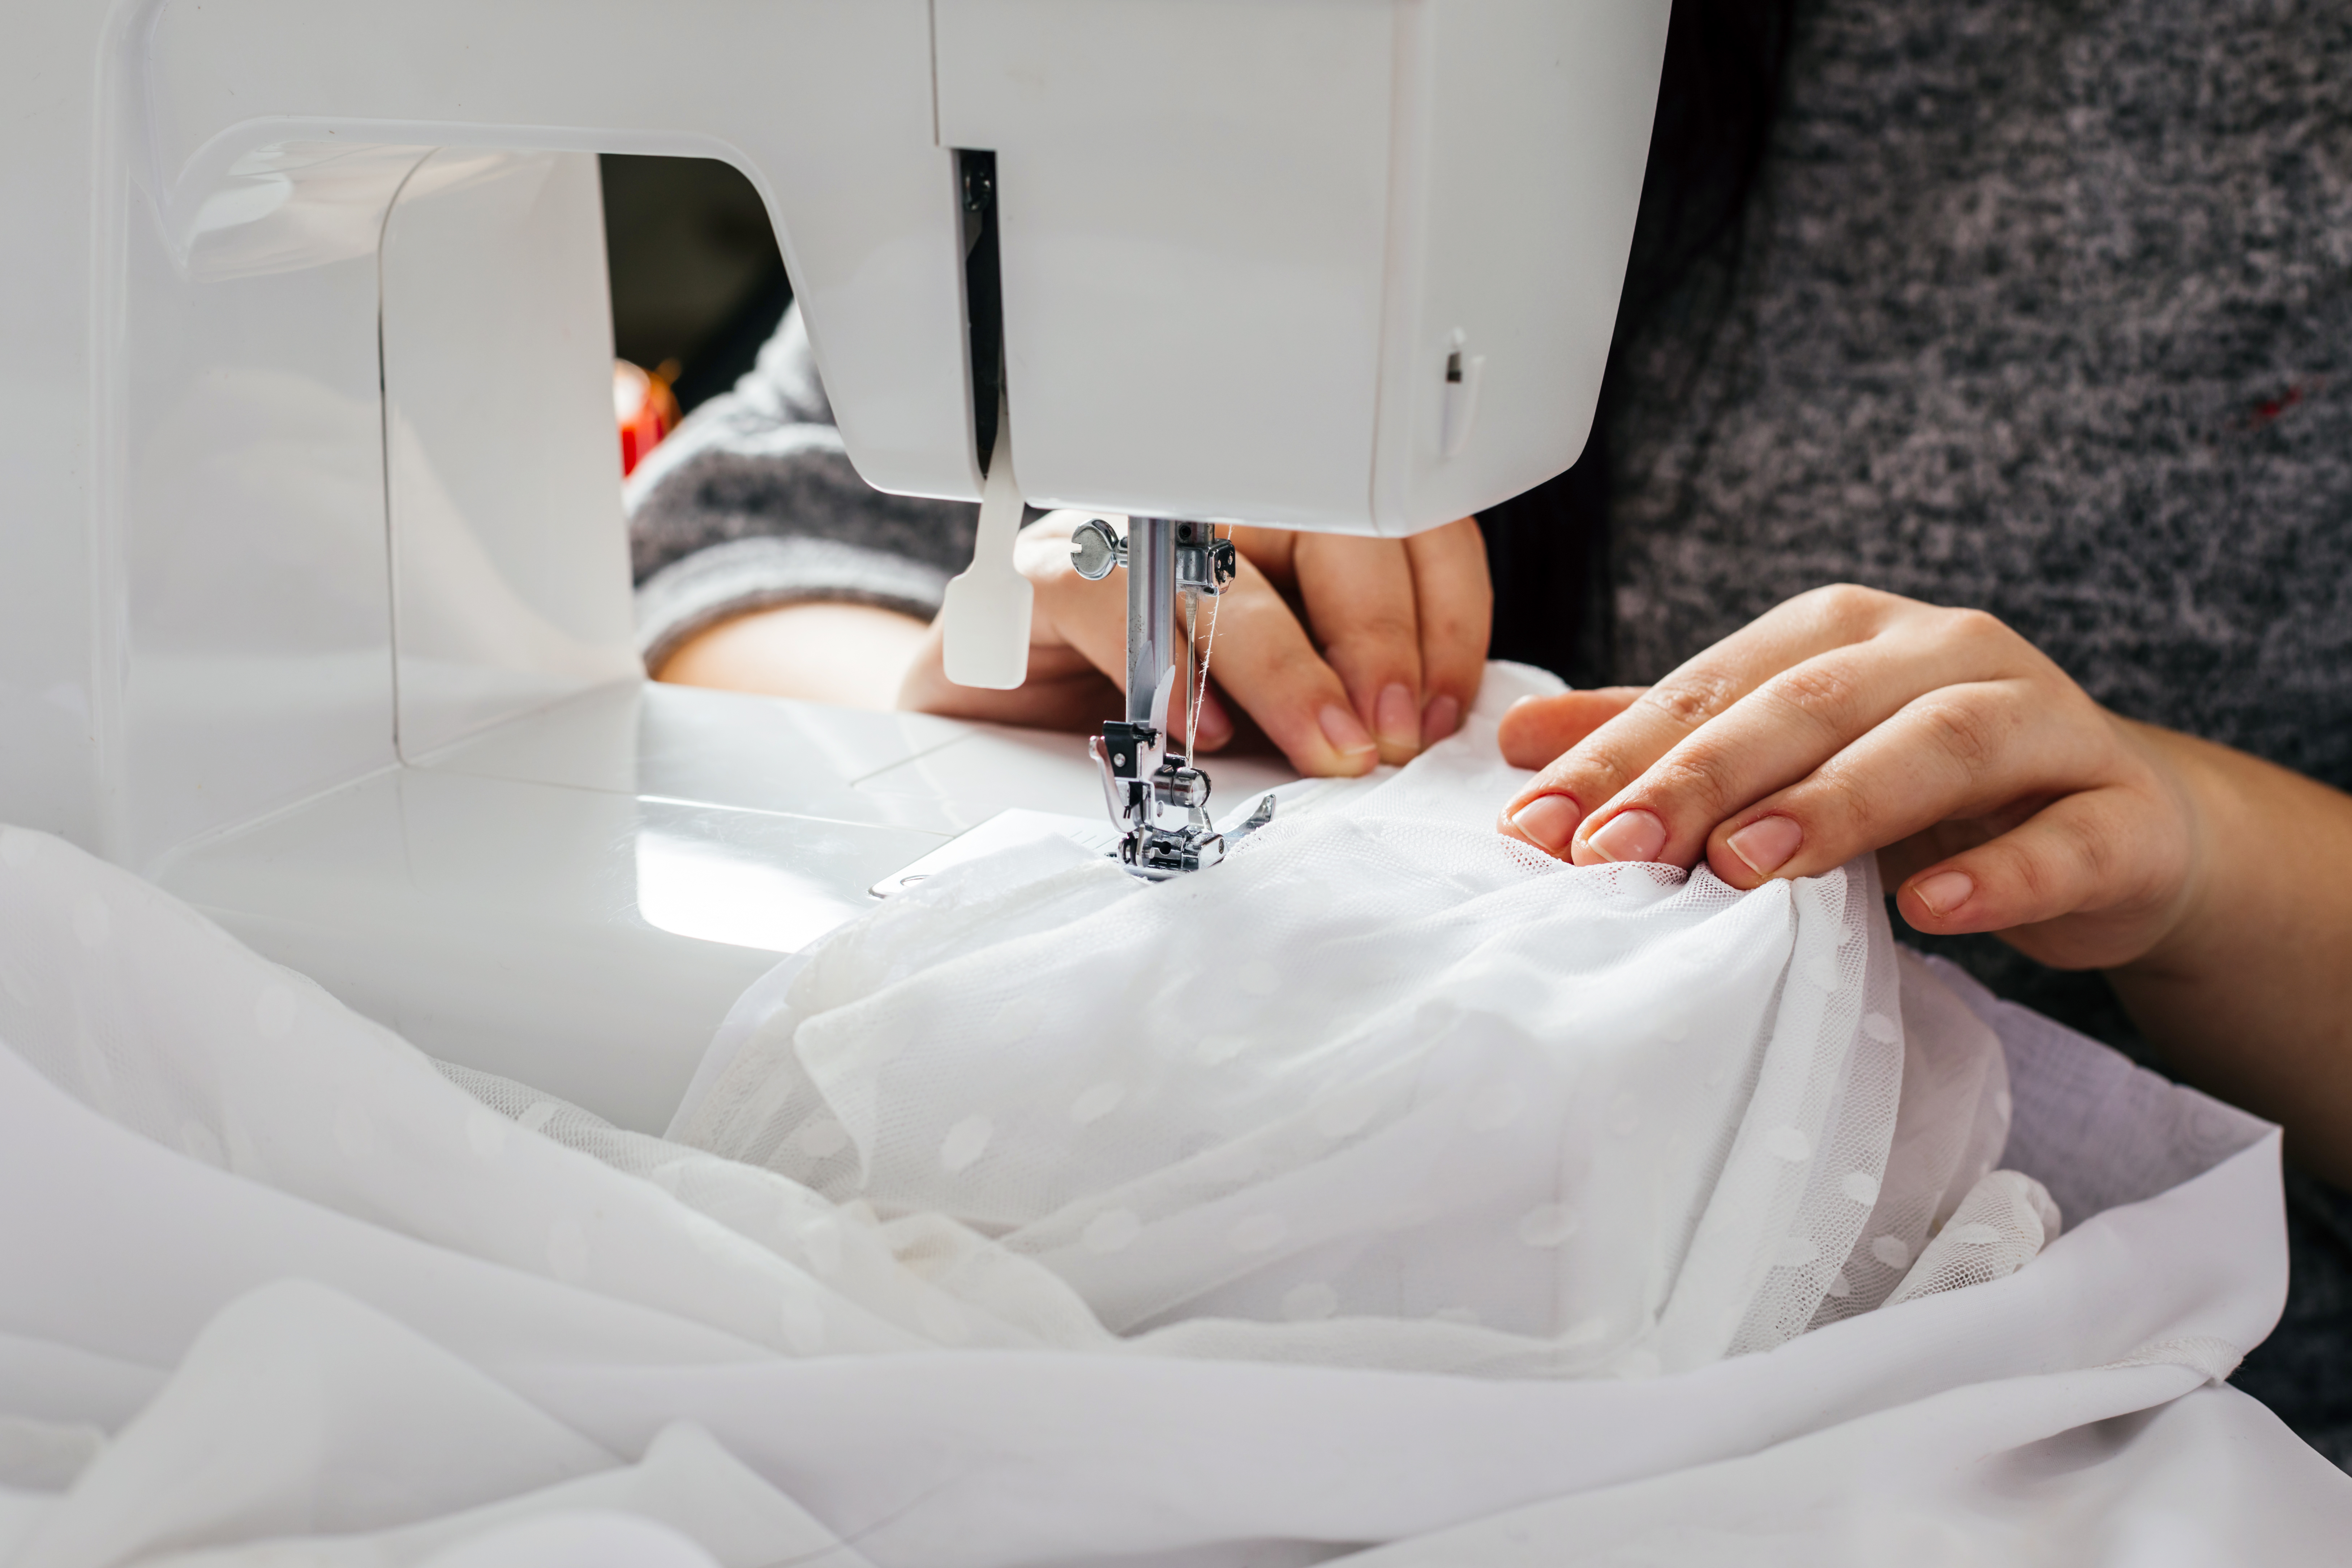 Une couturière en train de coudre une robe de mariée. | Source : Shutterstock